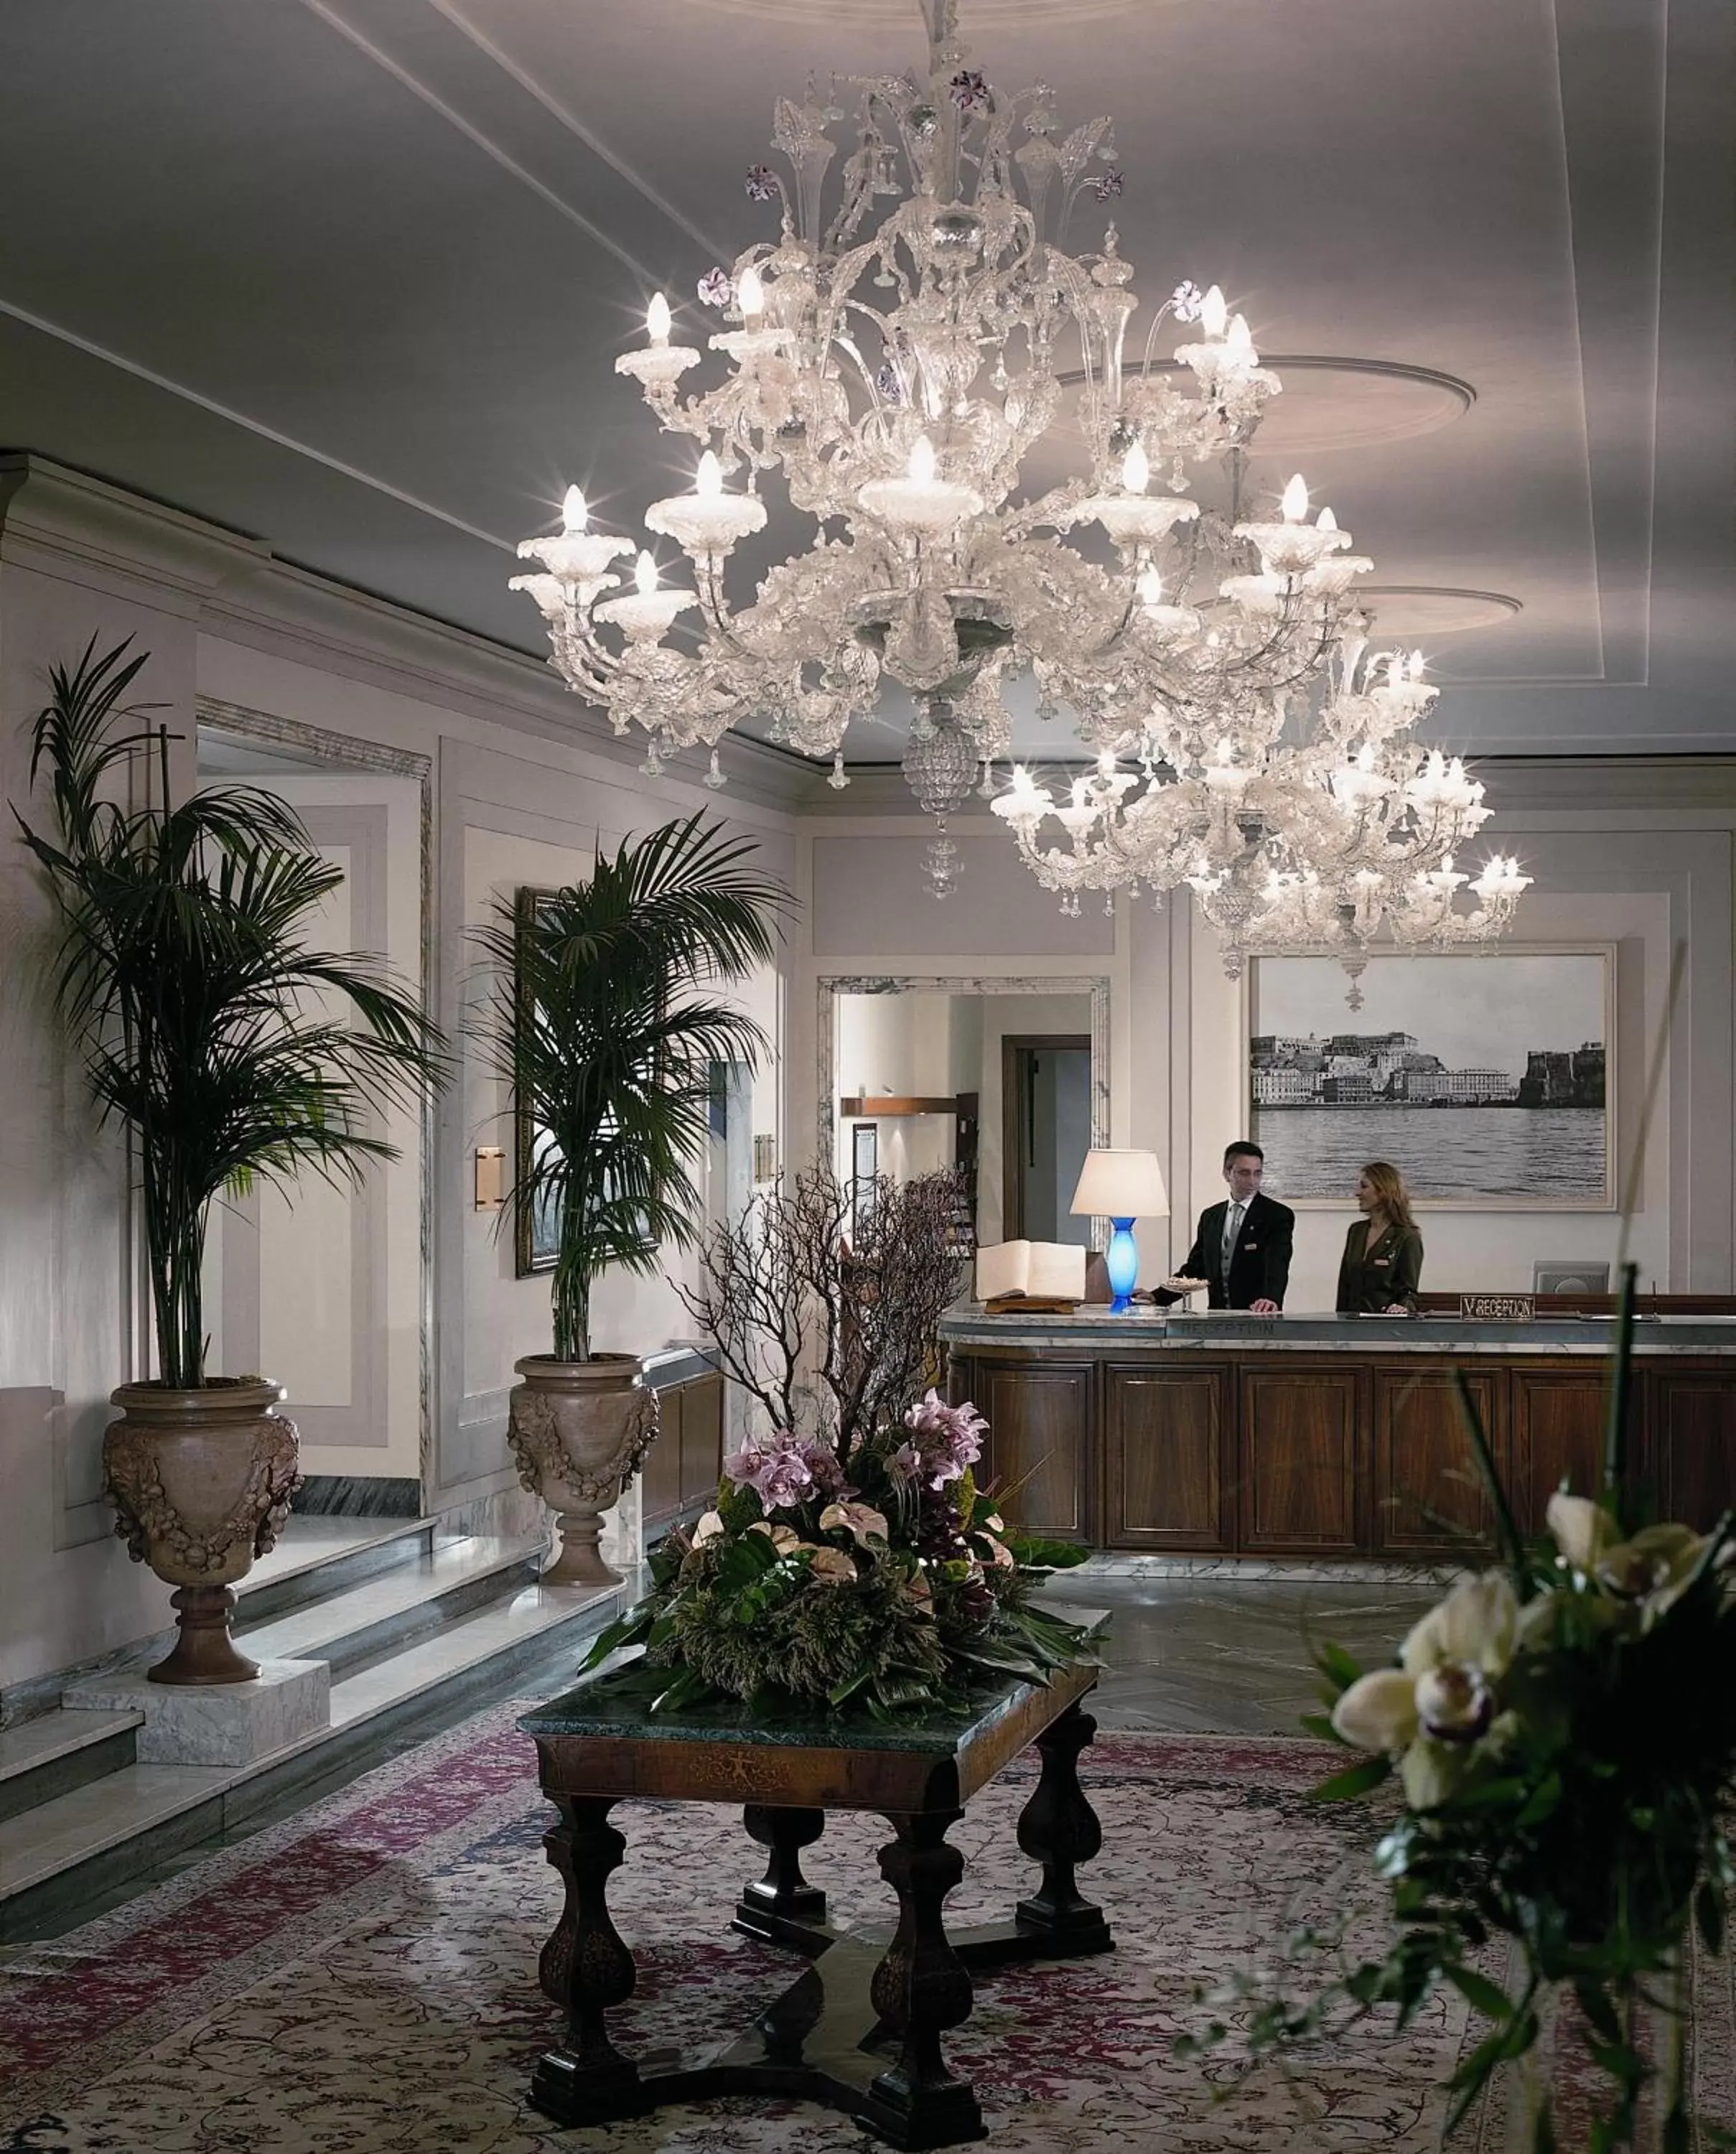 Lobby or reception, Lobby/Reception in Grand Hotel Vesuvio